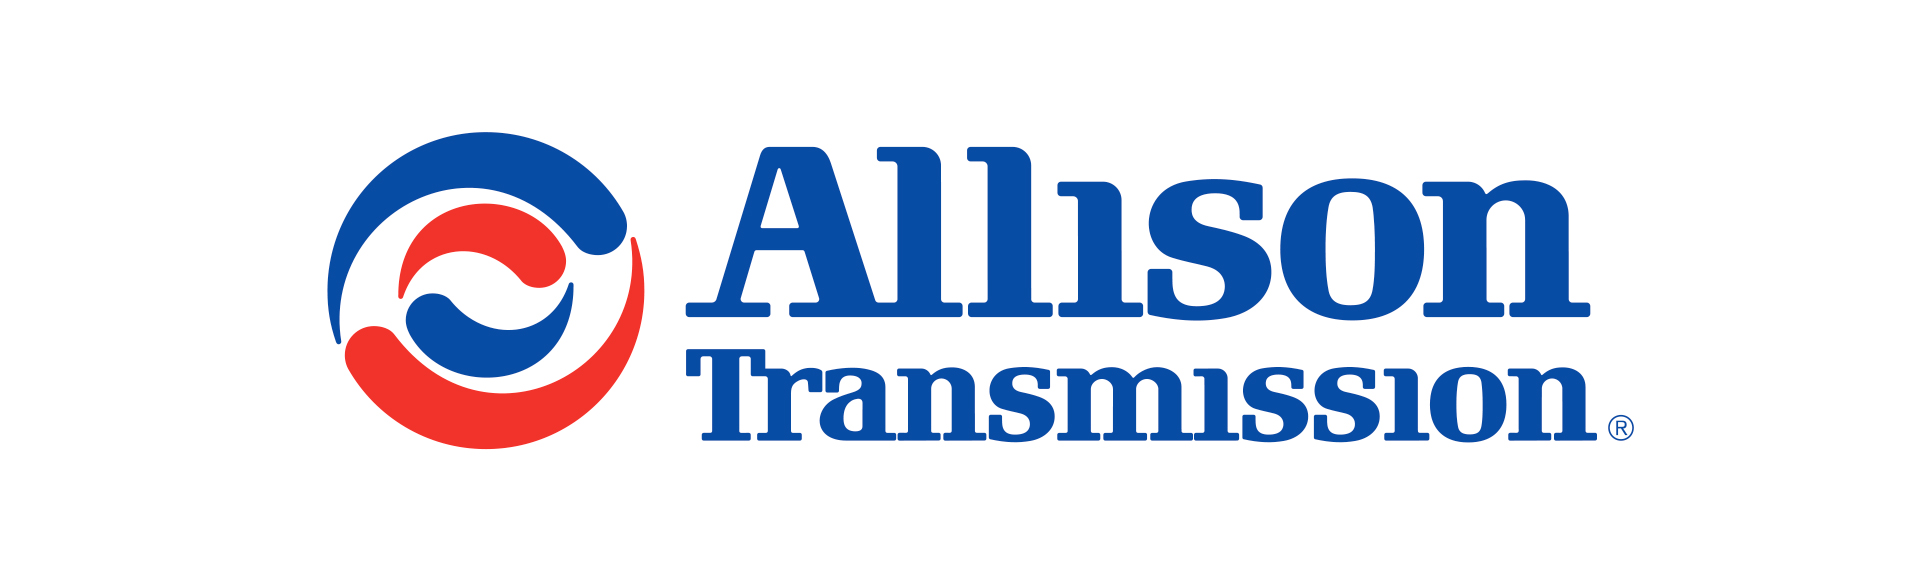 Allison transmission